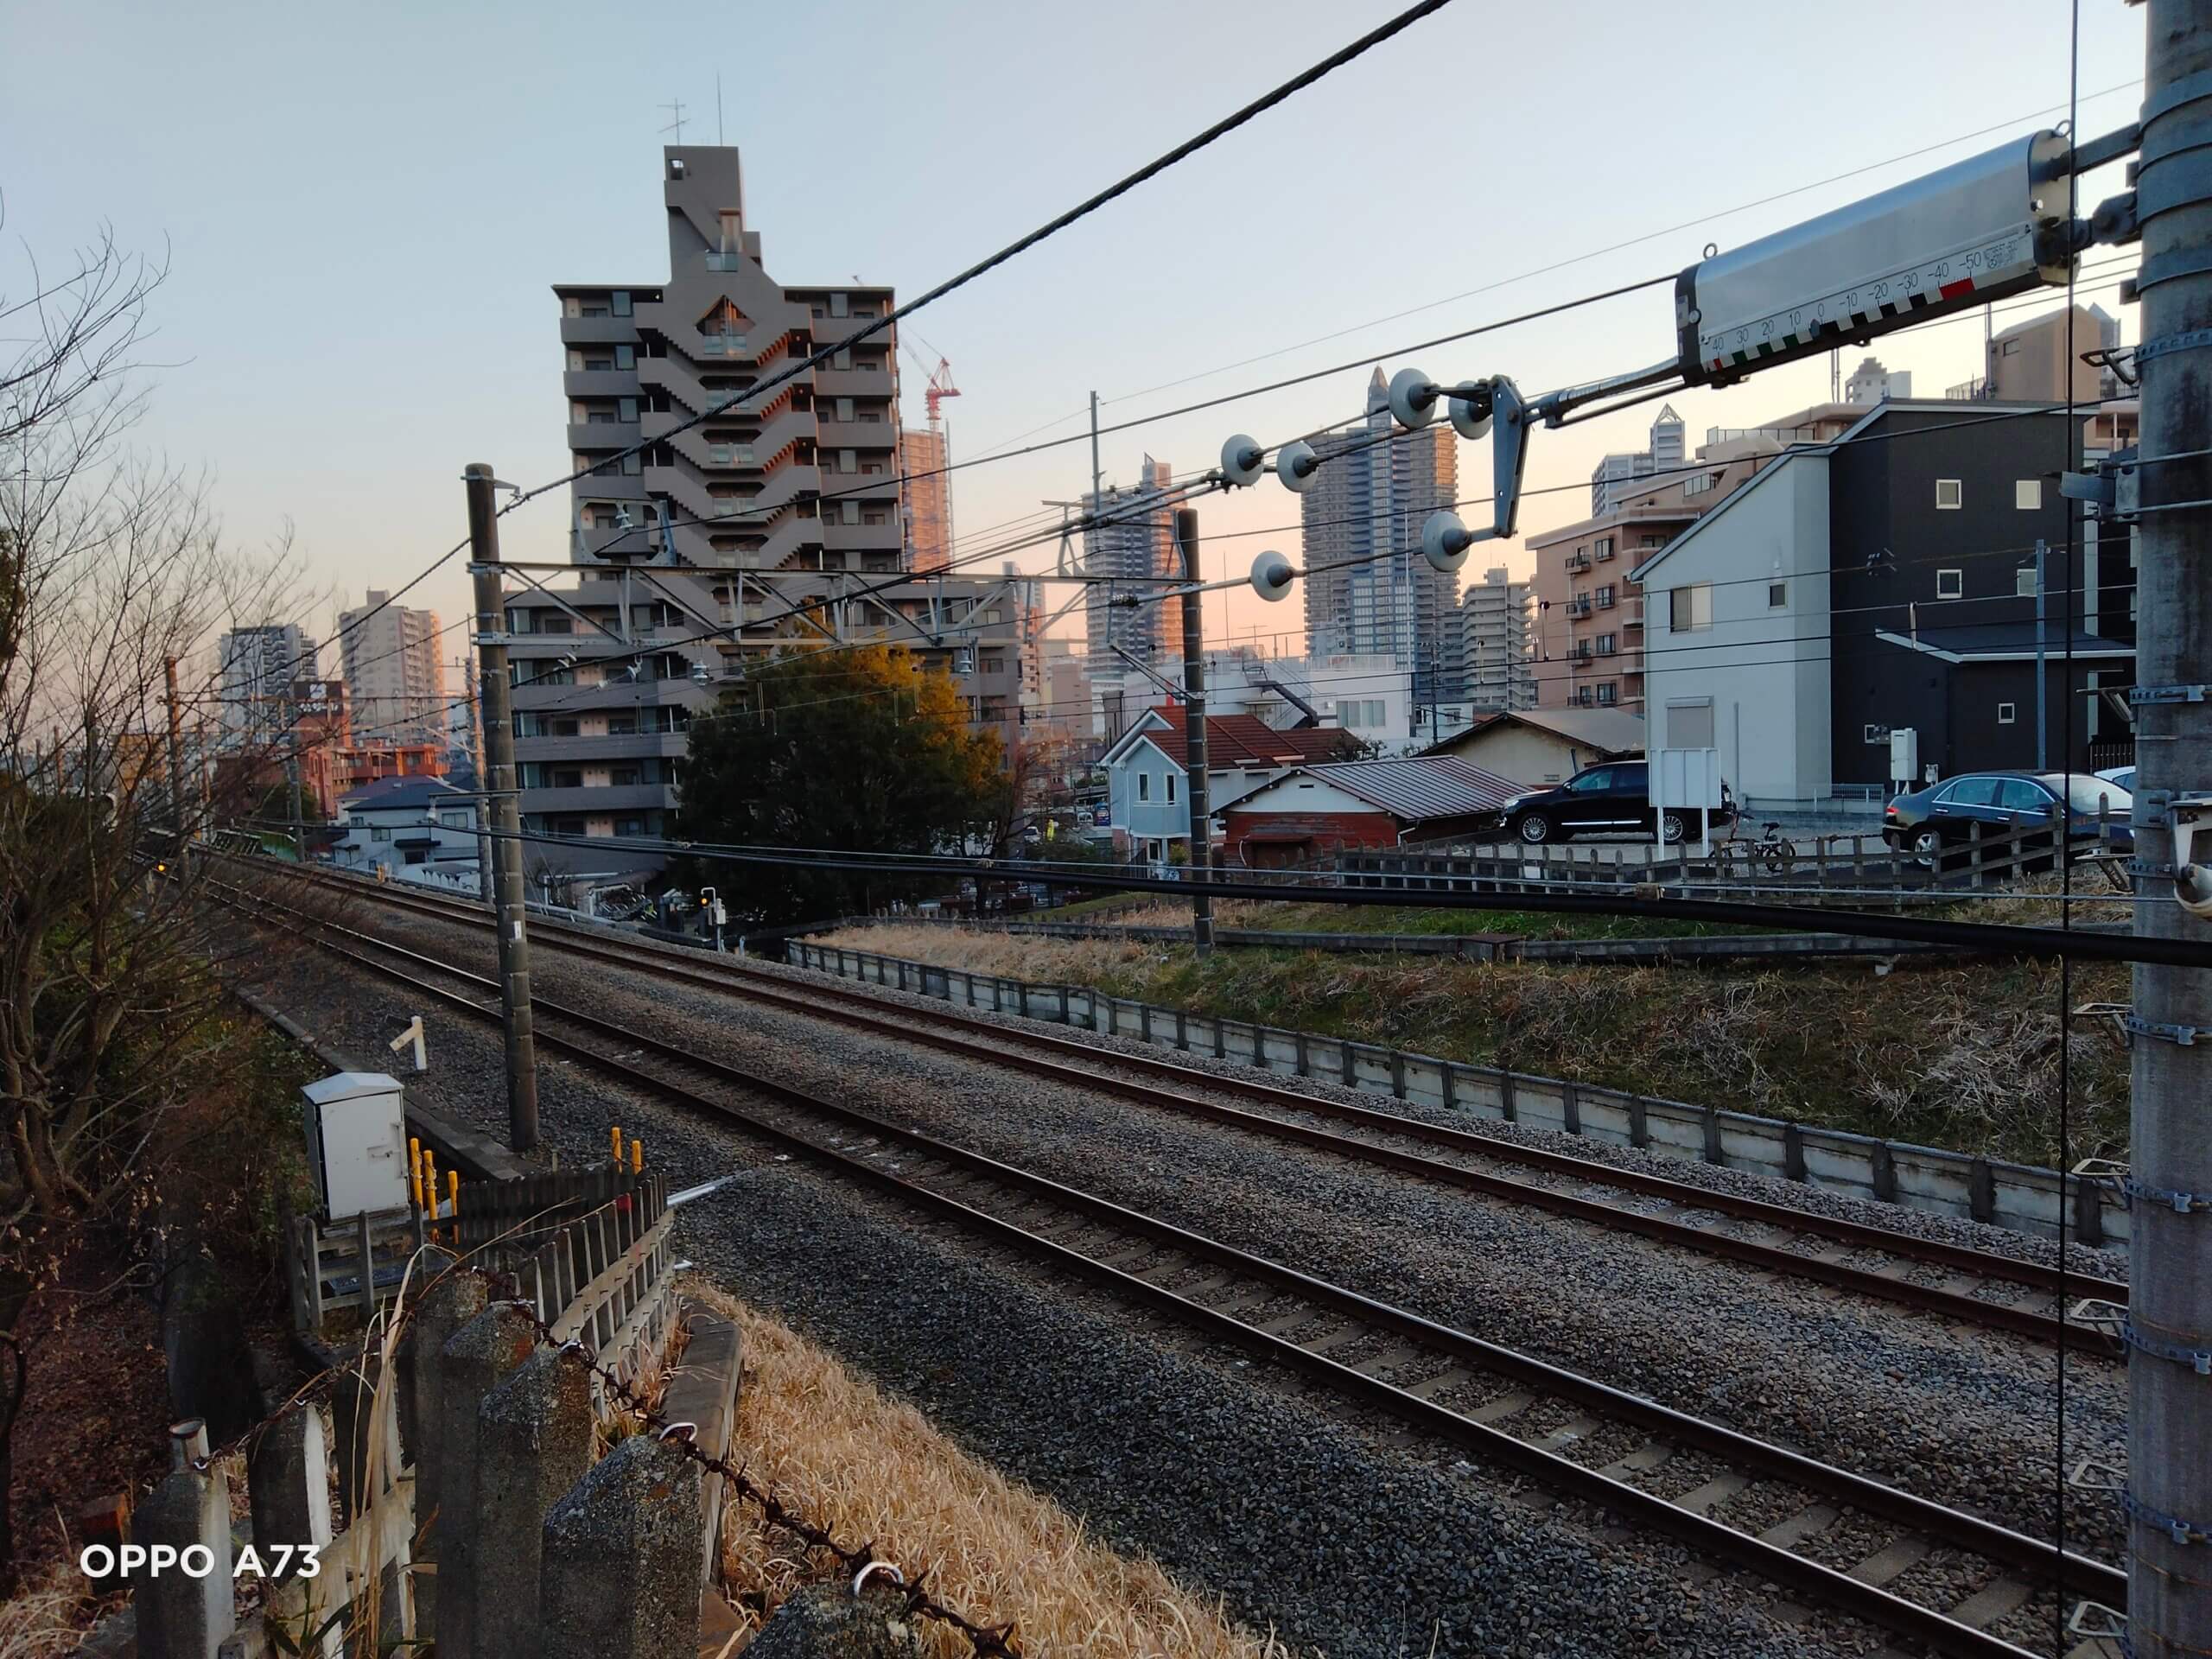 OPPO A73で撮影した鉄道と建物の写真